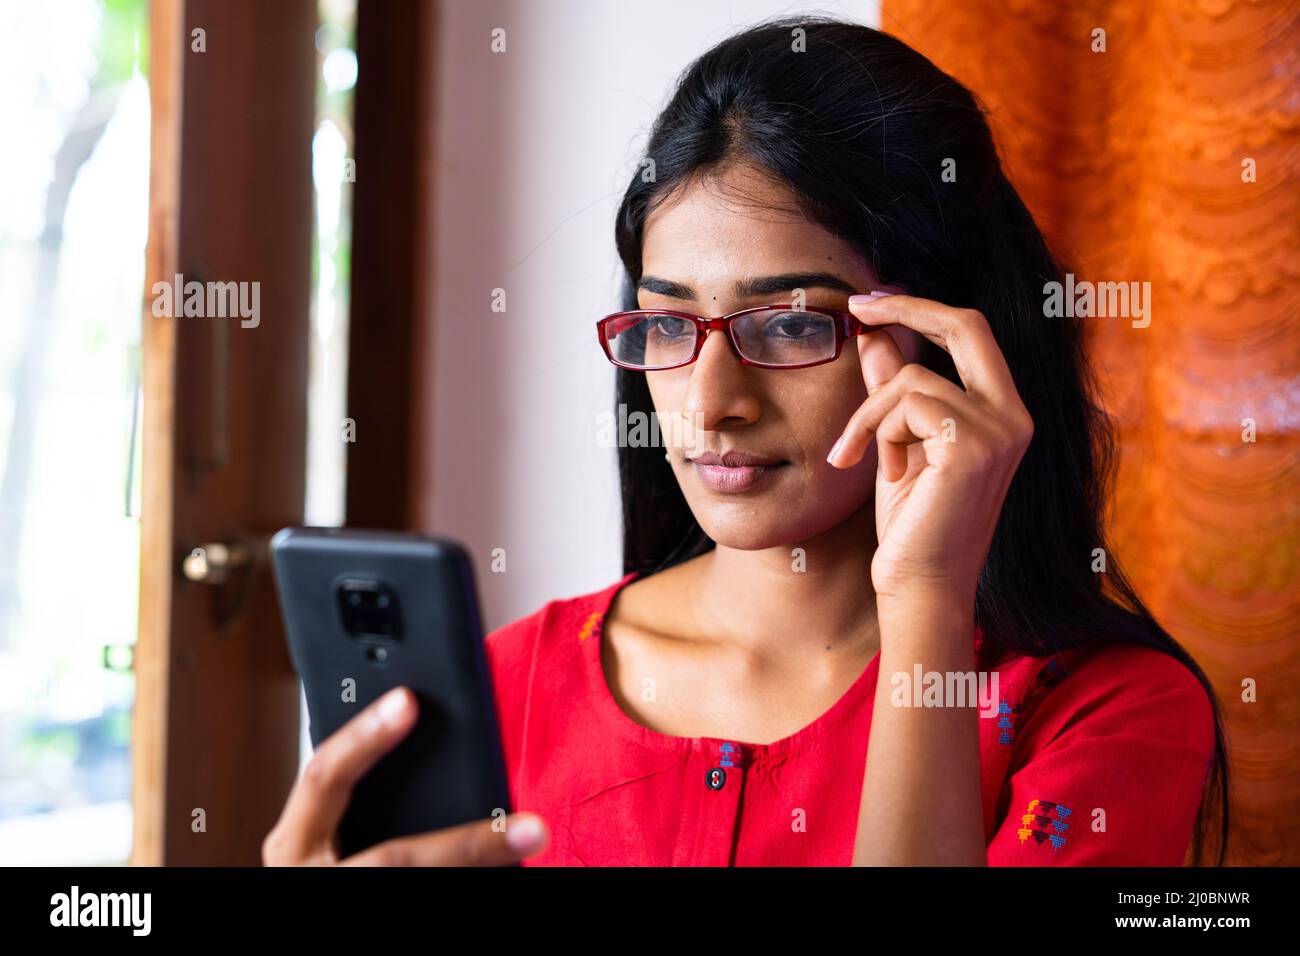 Junges Mädchen mit Brille beschäftigt mit Handy zu Hause - Konzept der sozialen Medien, Internet und Sehvermögen Problem Stockfoto